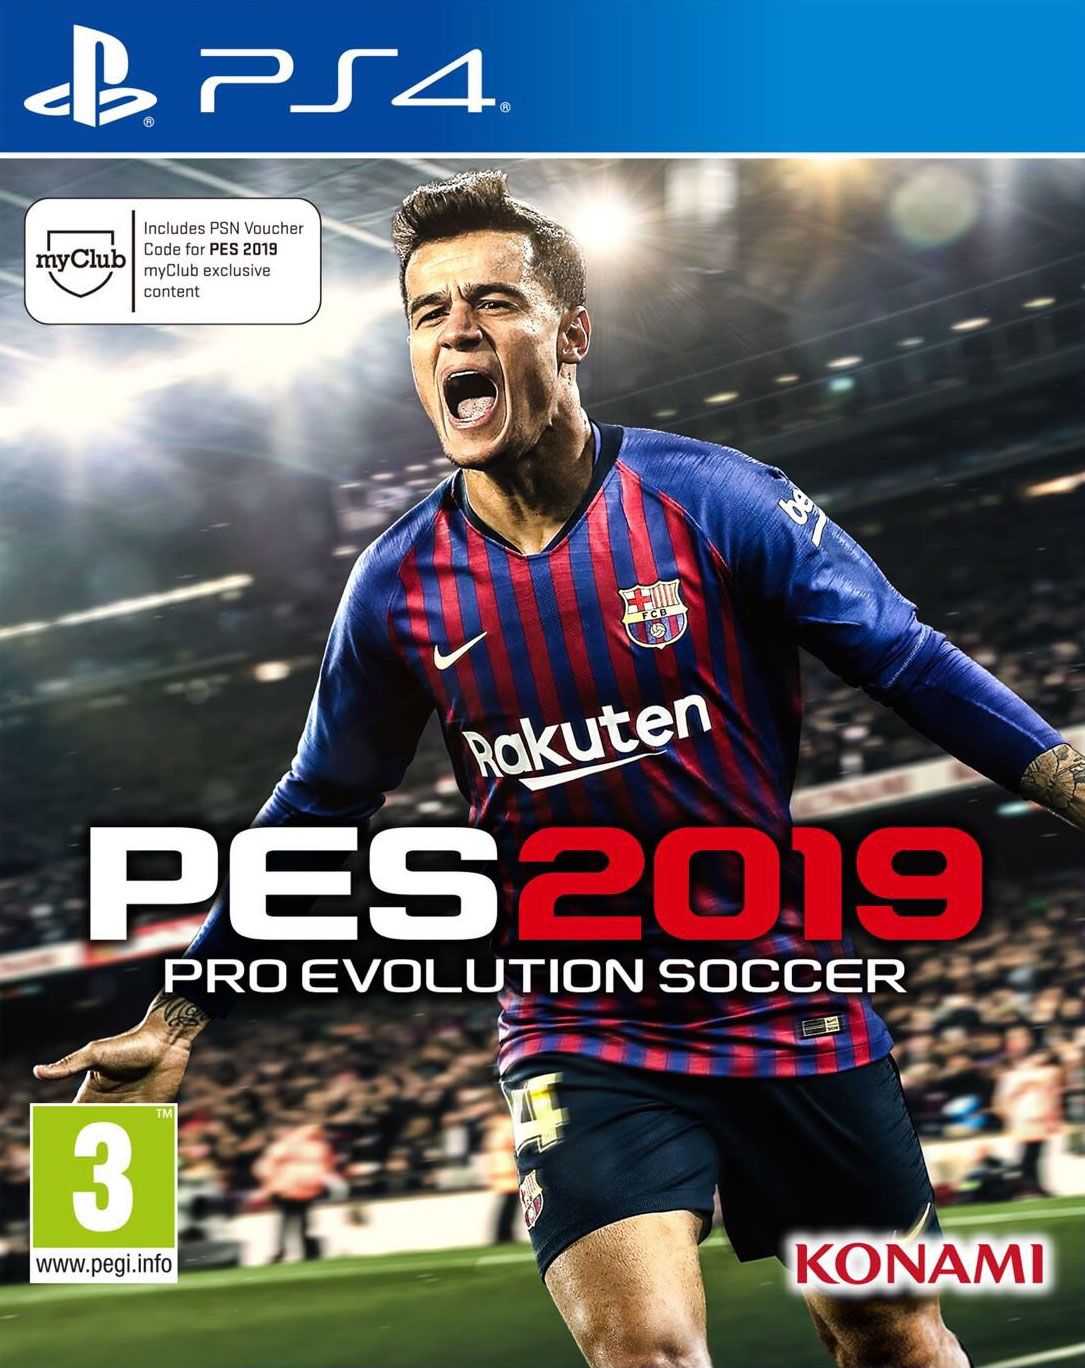 pro evolution soccer 2019 download ps4